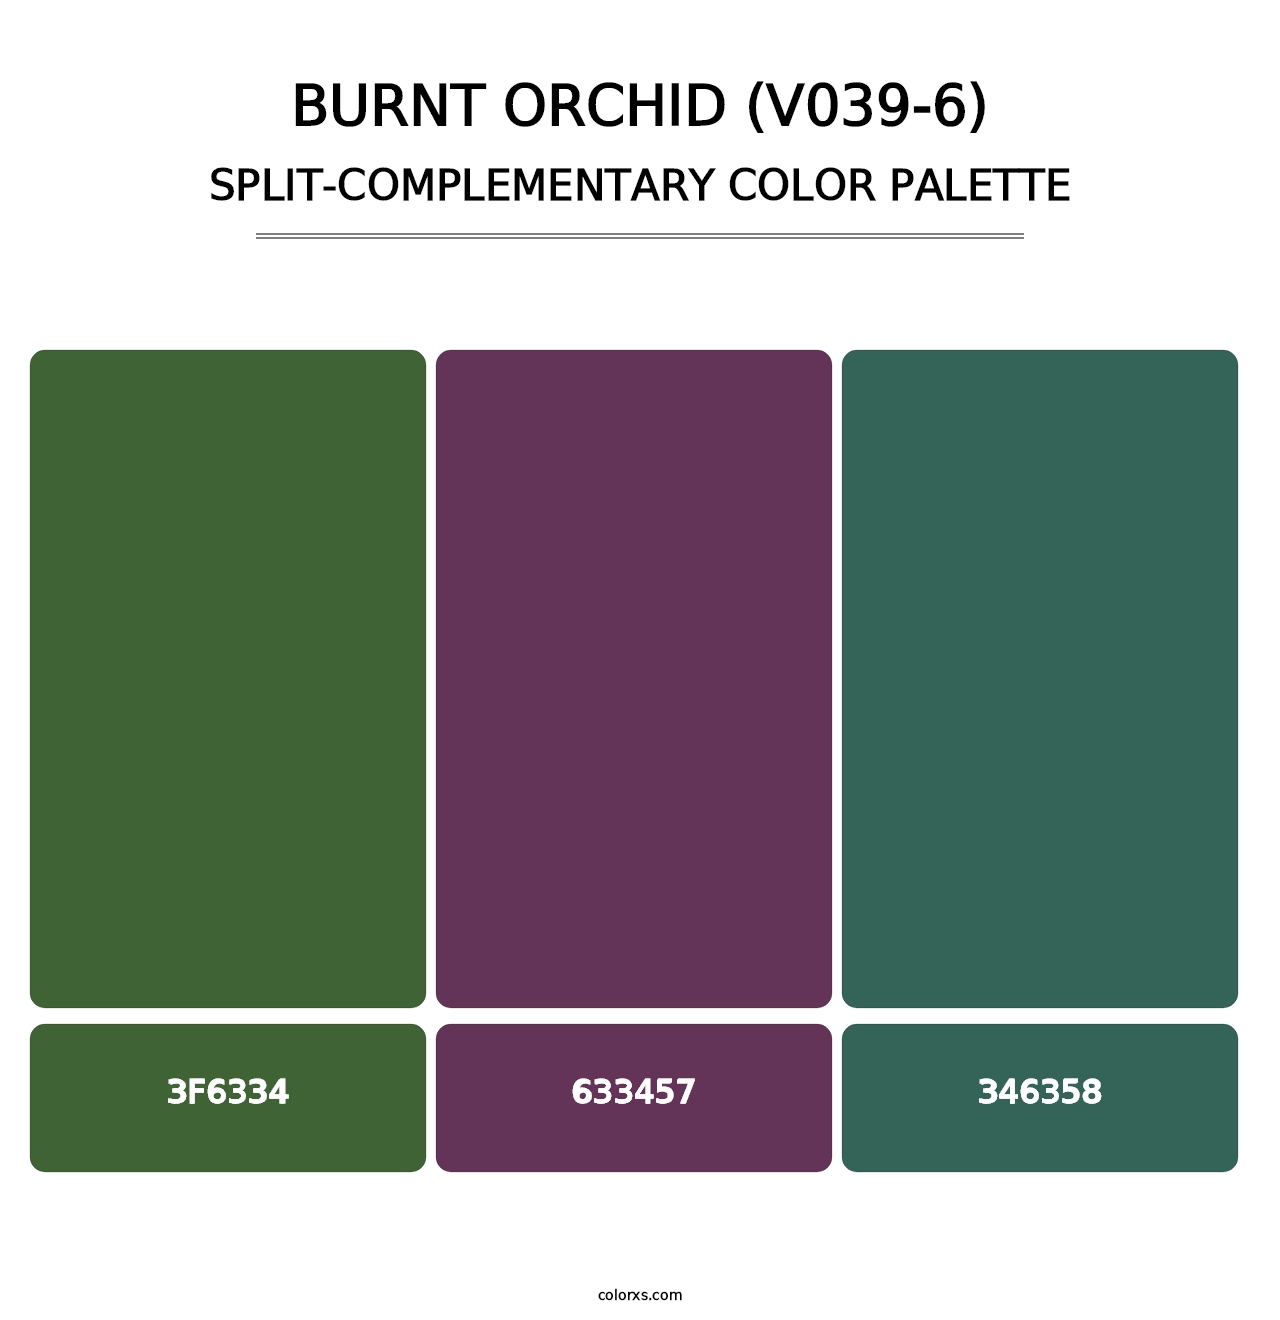 Burnt Orchid (V039-6) - Split-Complementary Color Palette